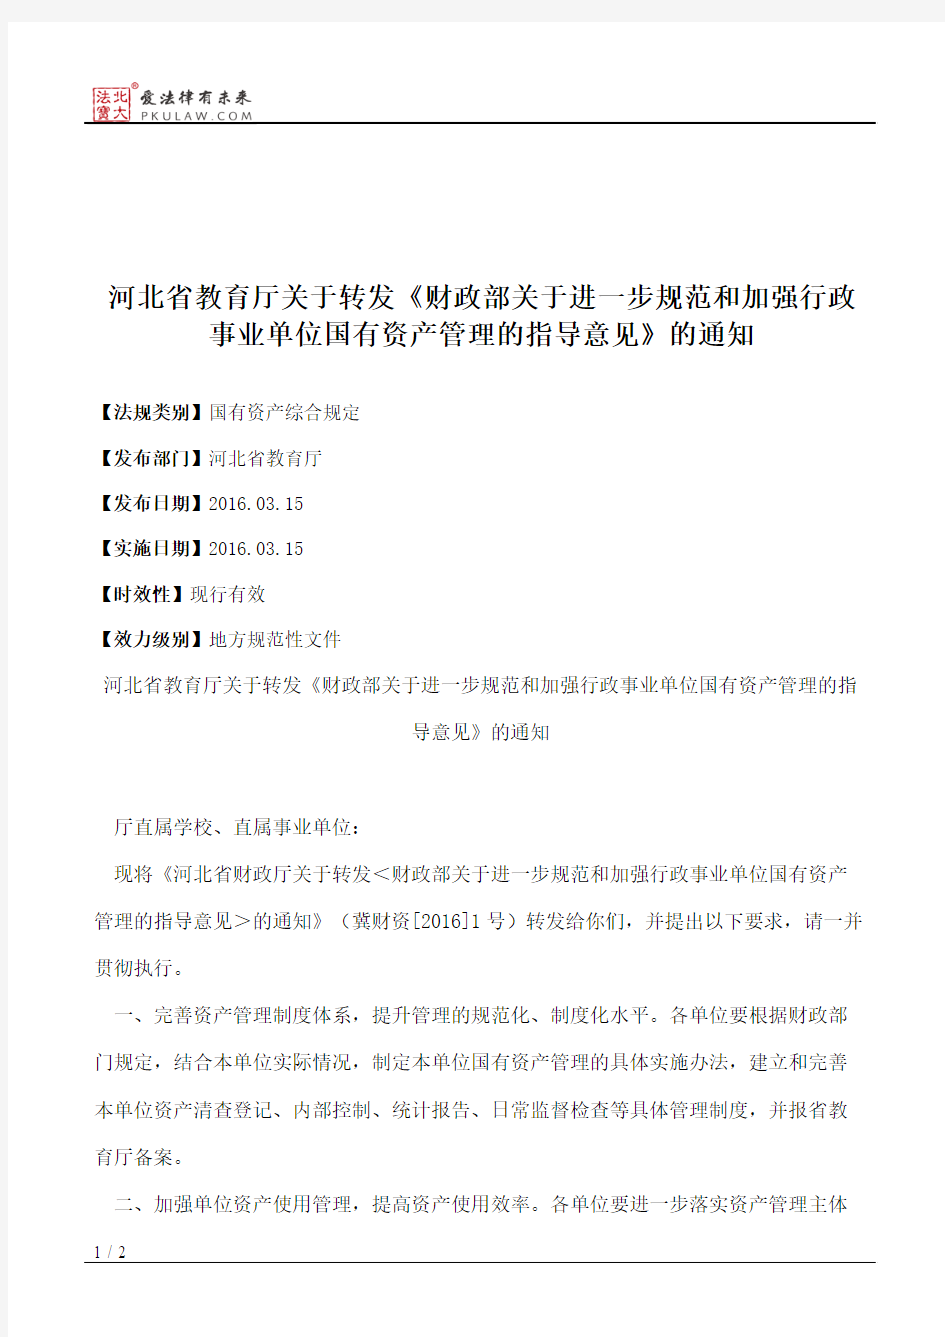 河北省教育厅关于转发《财政部关于进一步规范和加强行政事业单位